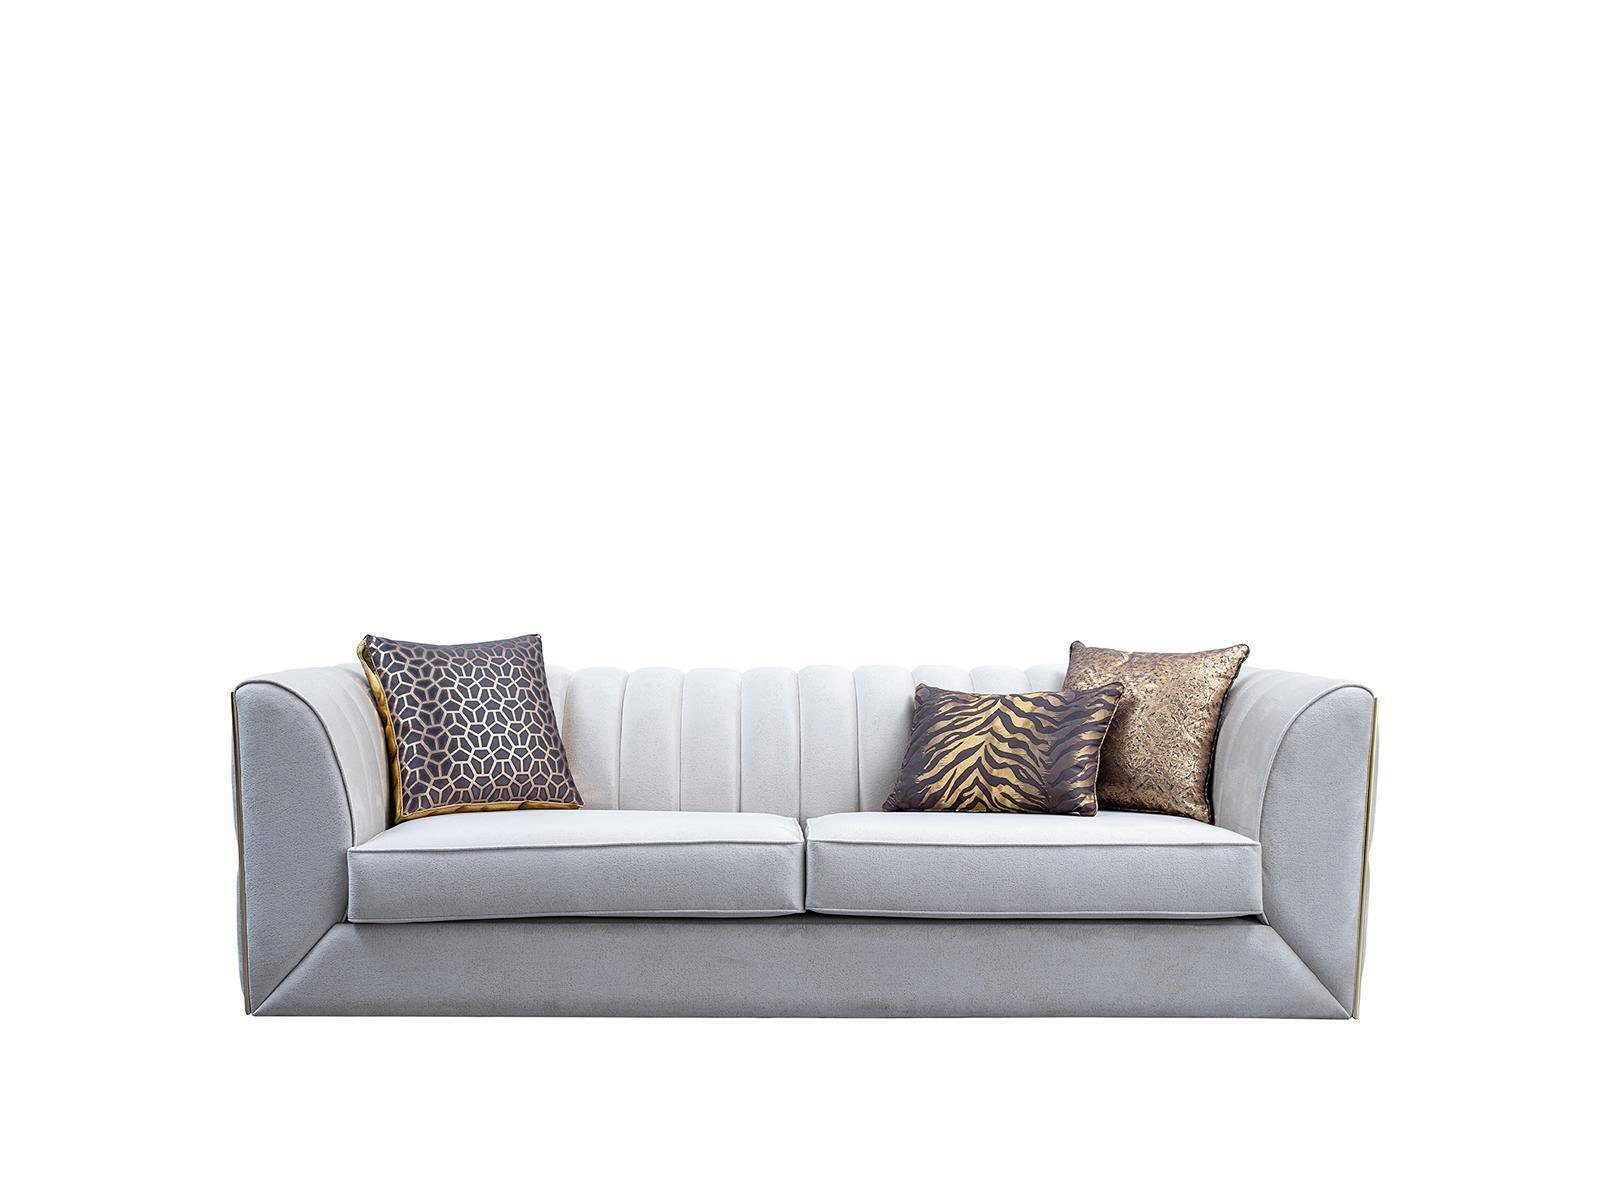 JVmoebel Sofa Weißer Edelstahl Dreisitzer Textilmöbel Wohnzimmer Couch Polstermöbel, 1 Teile, Made in Europe